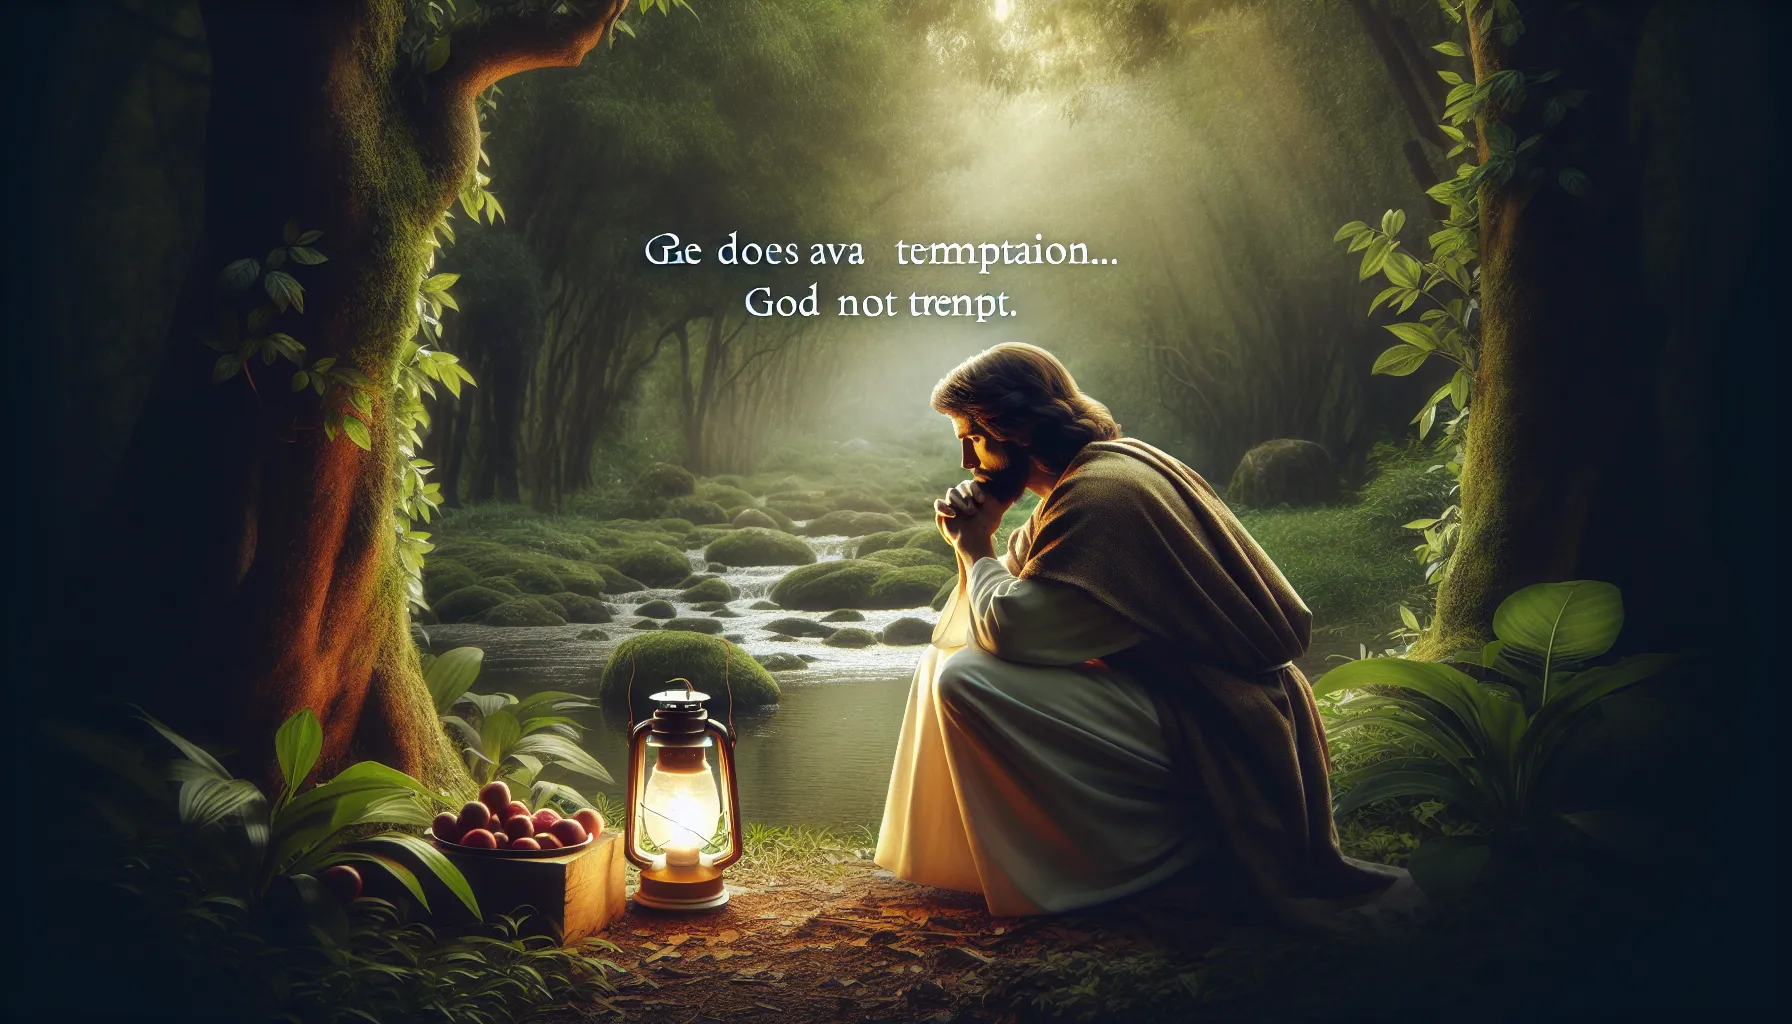 Imagen representando la reflexión sobre la petición de Jesús a Dios acerca de evitar la tentación